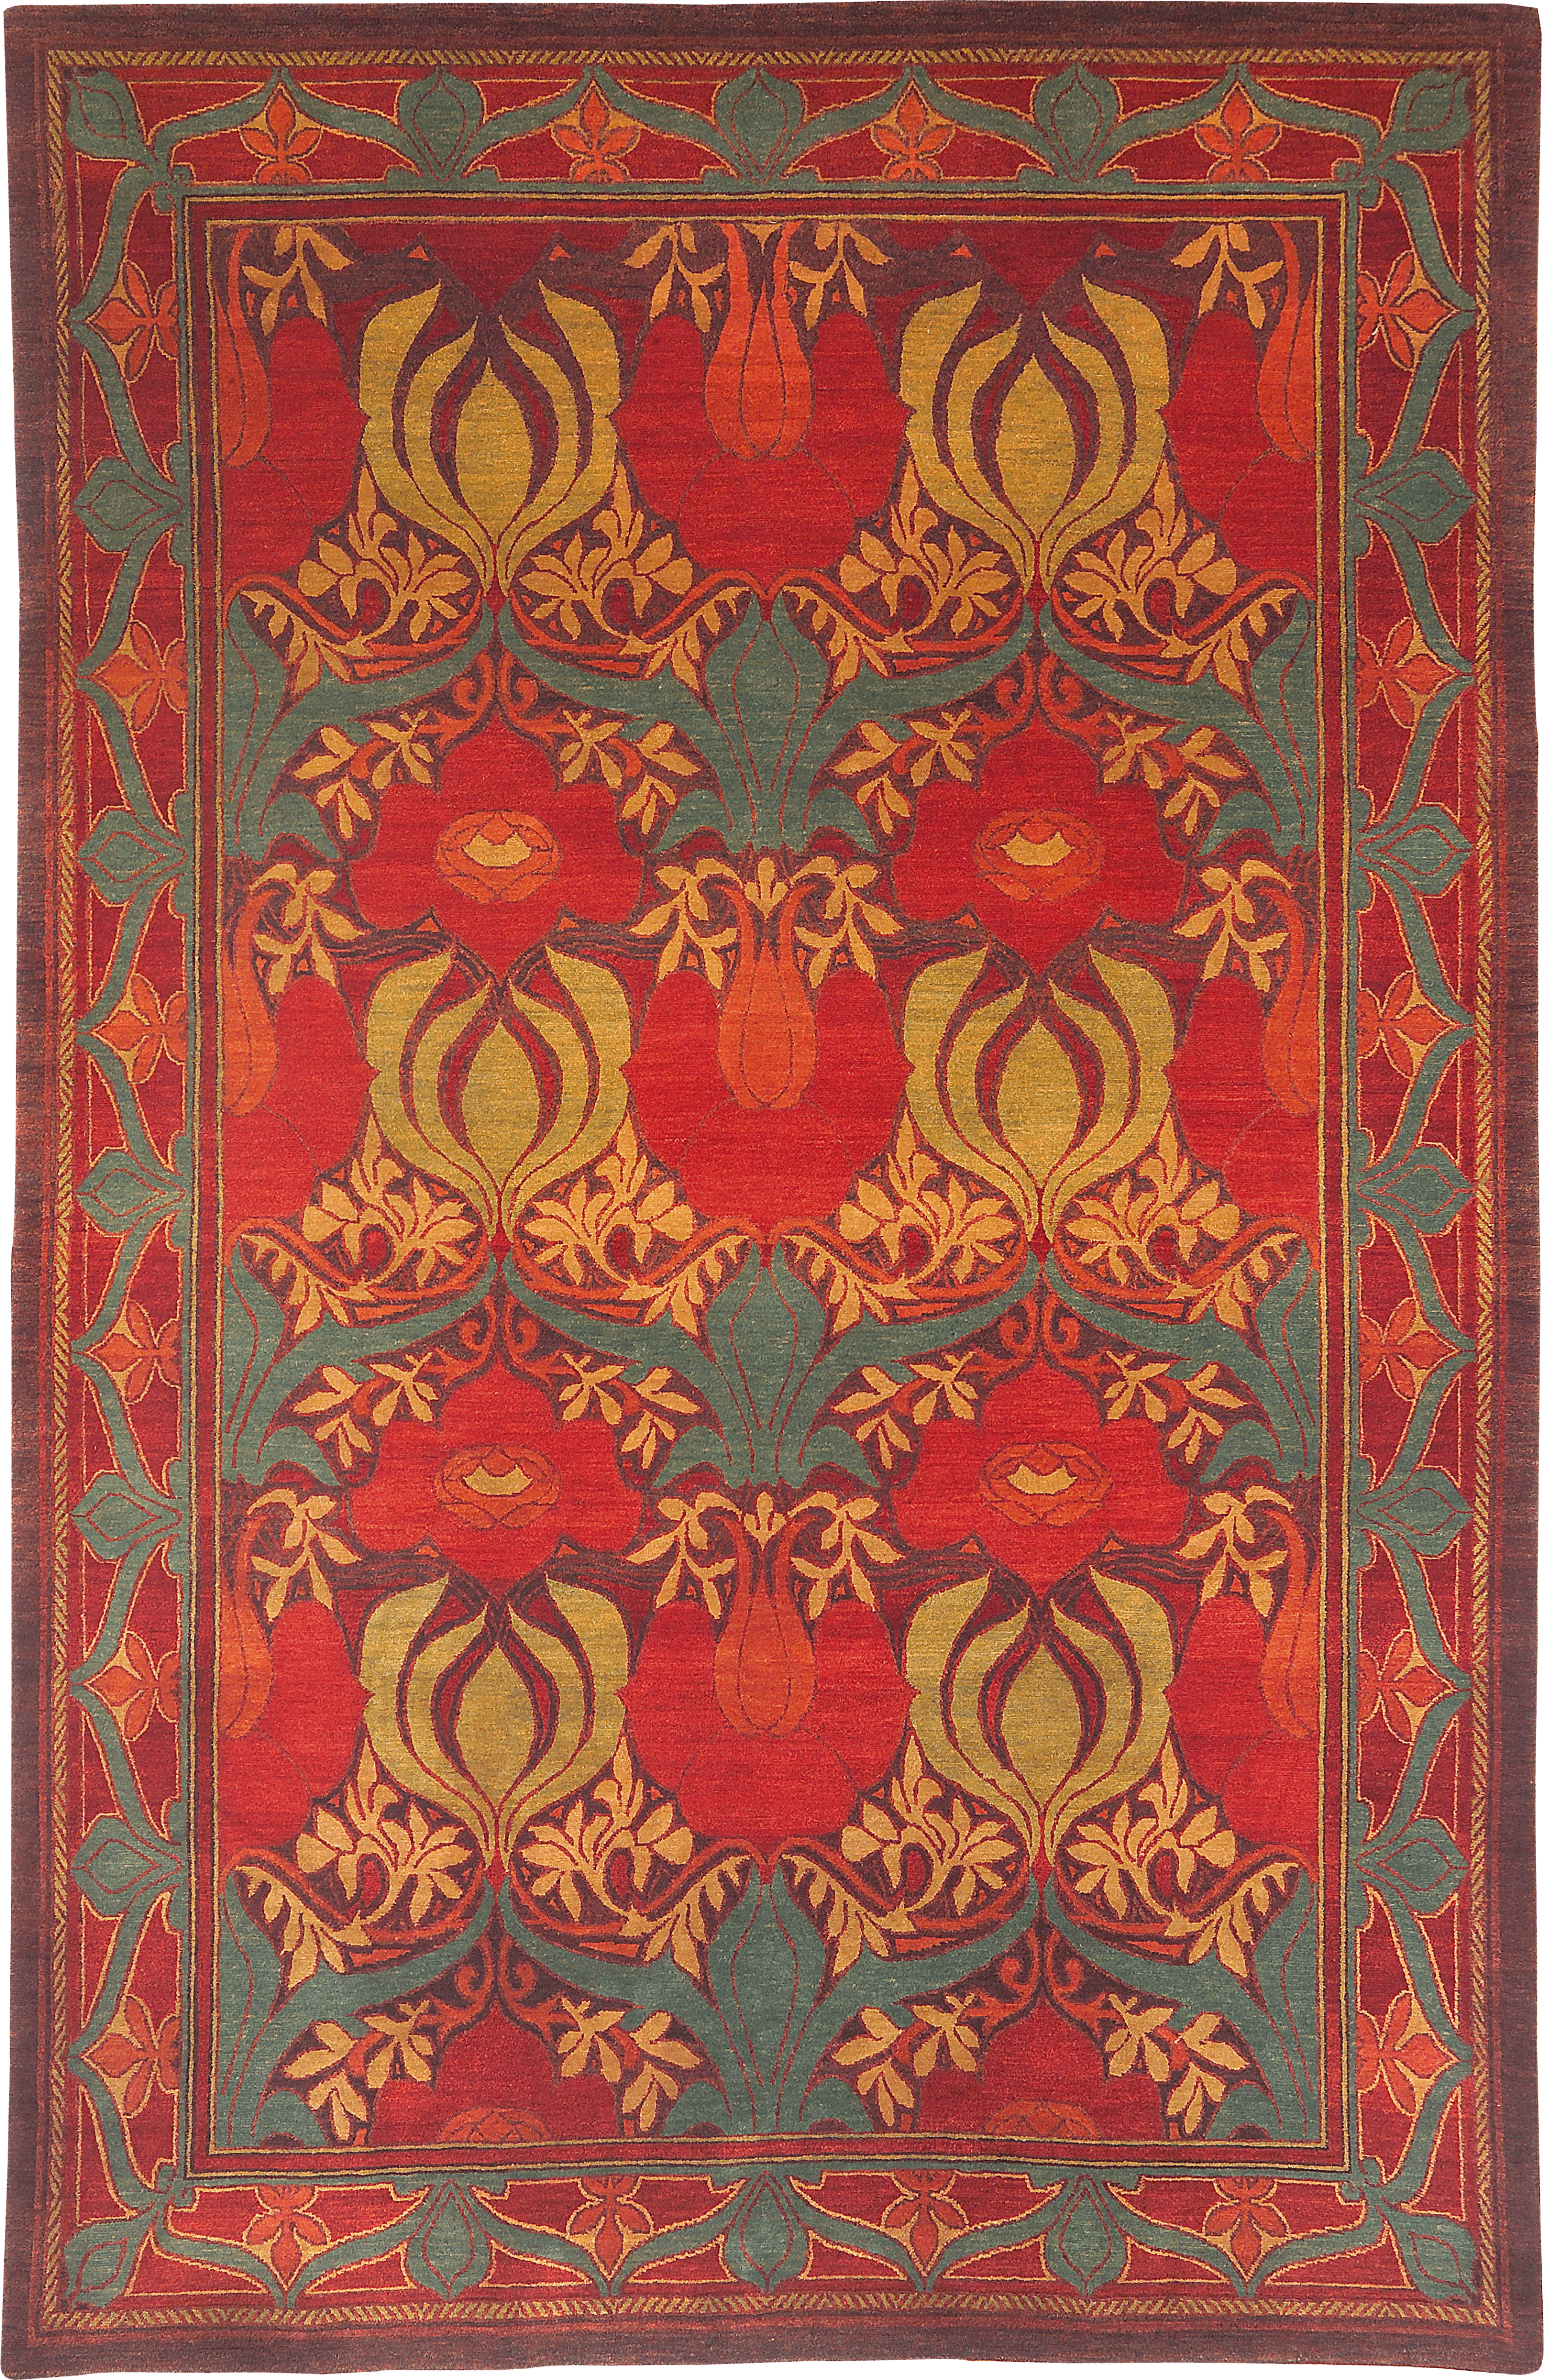 Geba Teppich "Donegal NC" in rot und senfgelb und grün, Anlehnung an einen klassischen Teppich mit Bordüre mit floralem Muster, aus Nepal, 100 Knoten, gefertigt aus pflanzlich gefärbter tibetischer Hochlandschafwolle - Produktbild - Geba Teppich